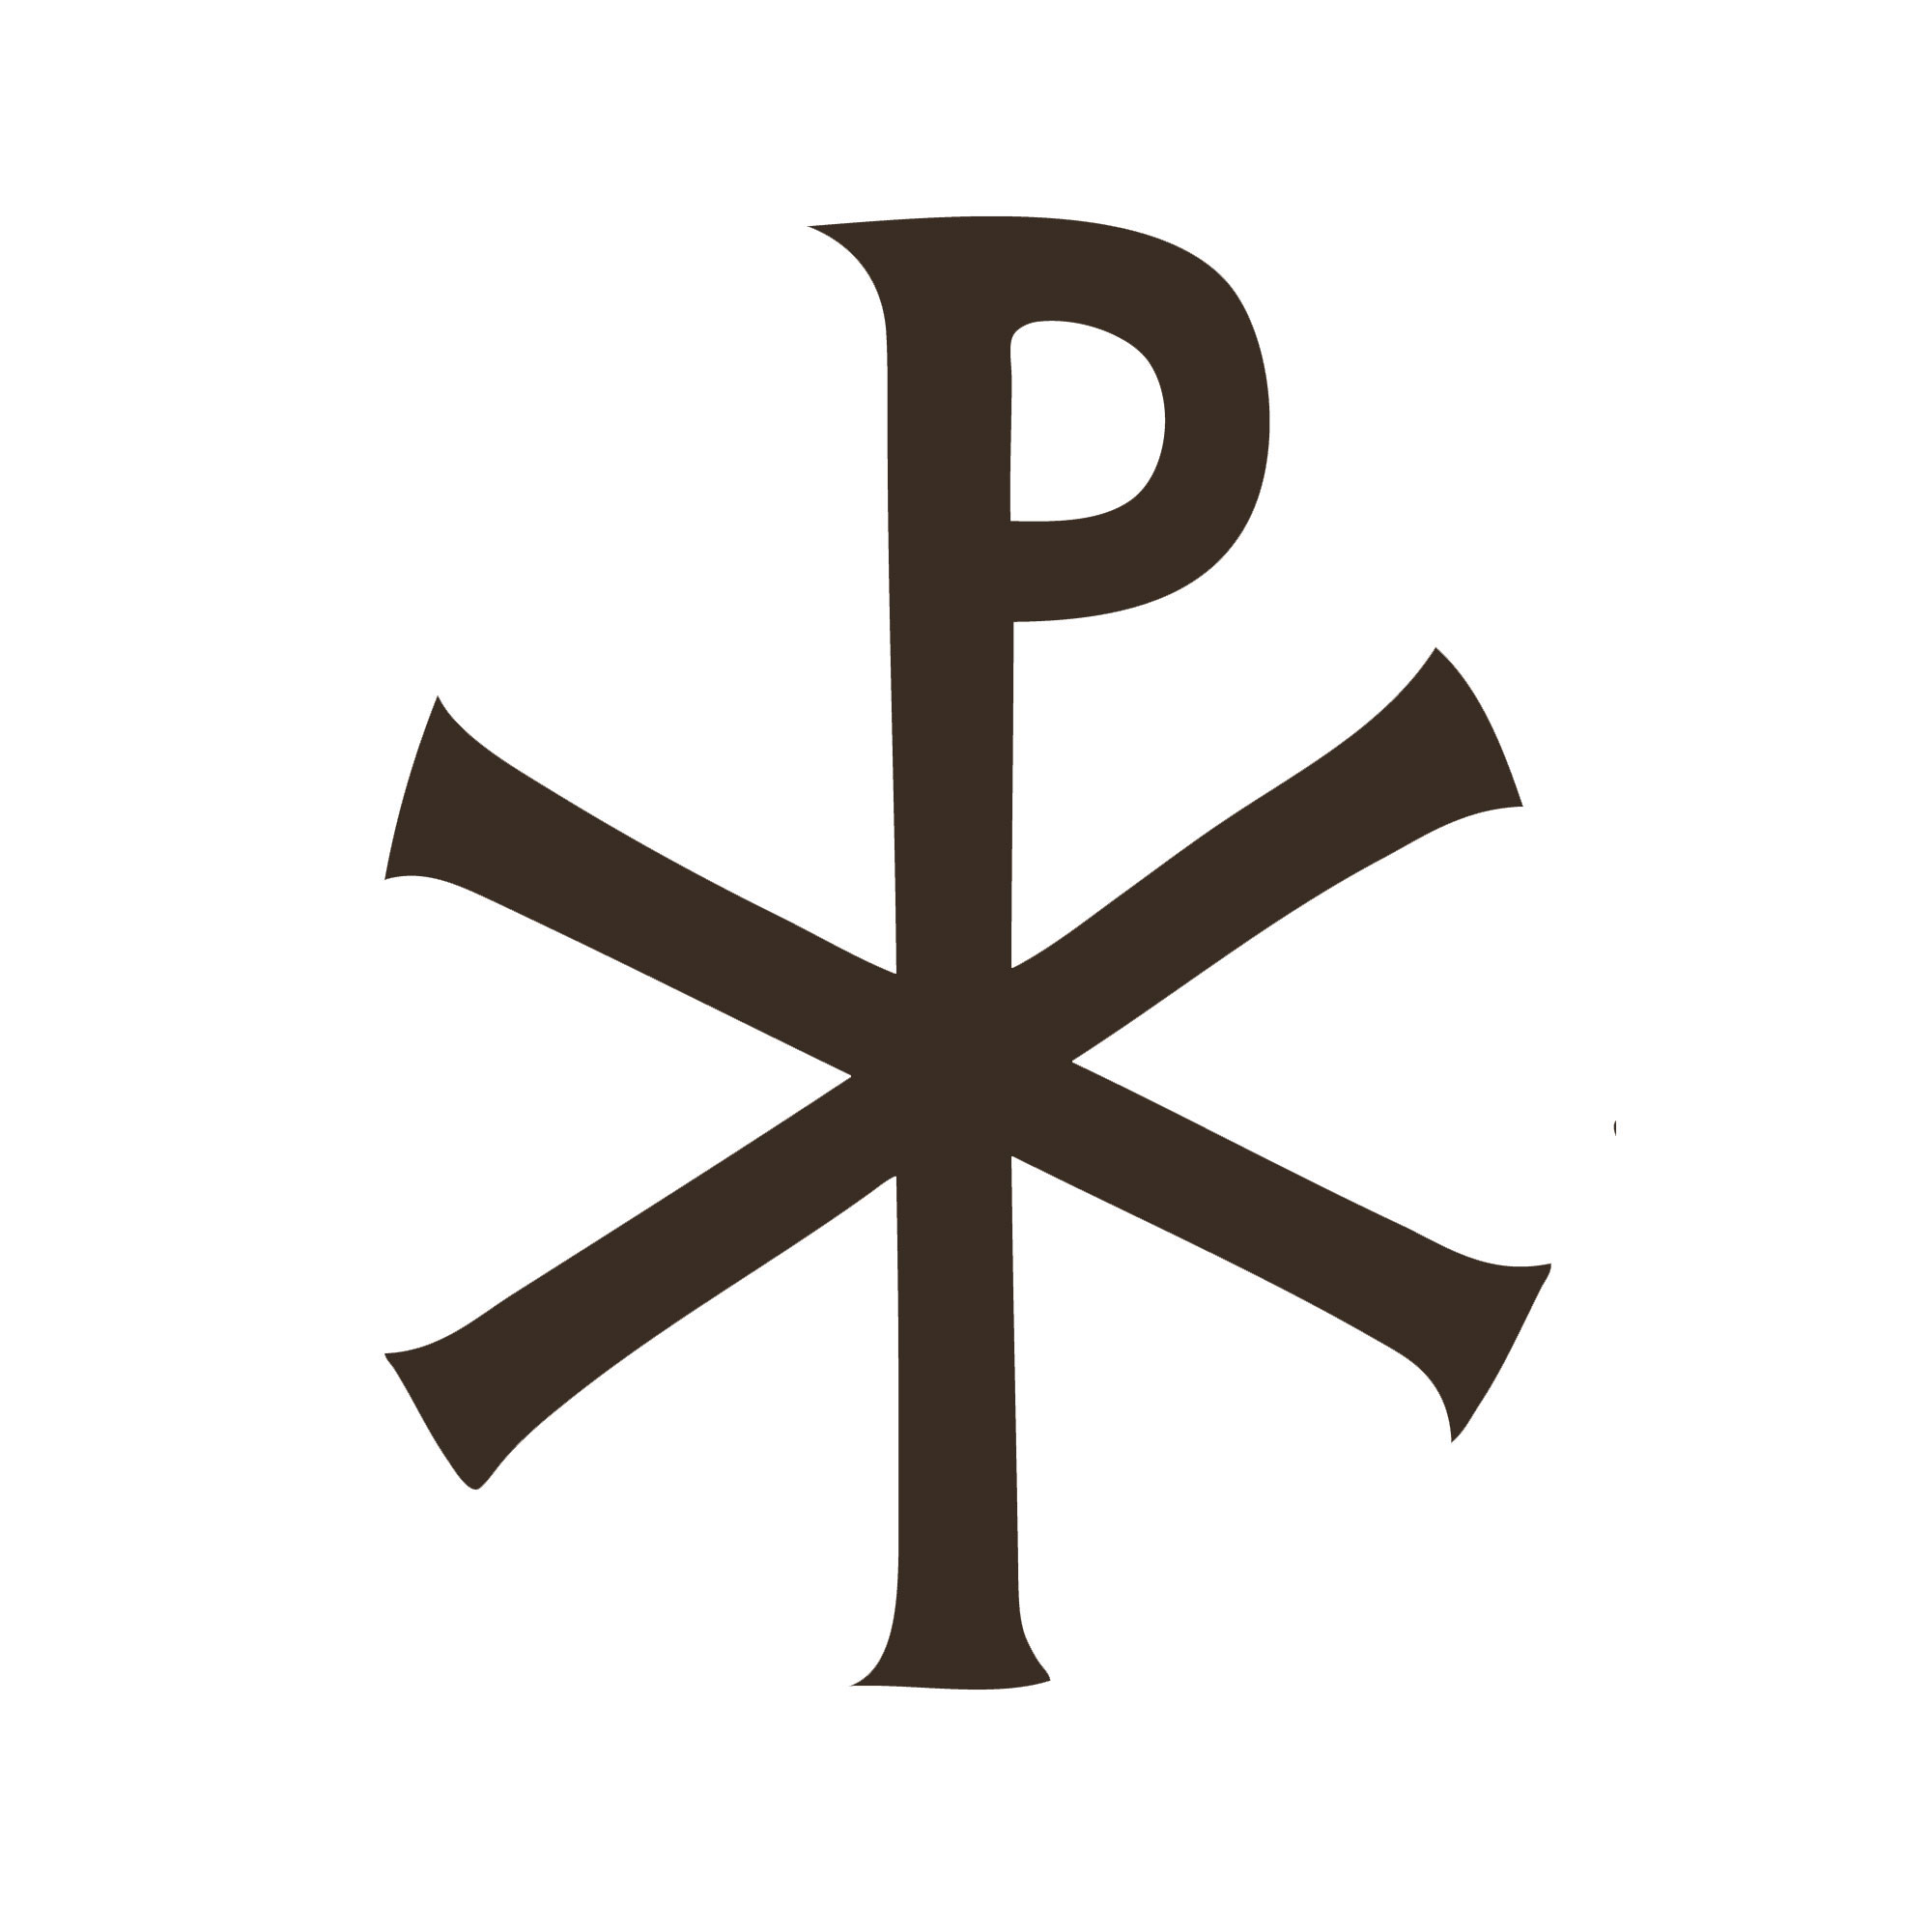 Lábaro, símbolo que Constantino llevó en sus escudos durante la batalla del Puente Milvio.